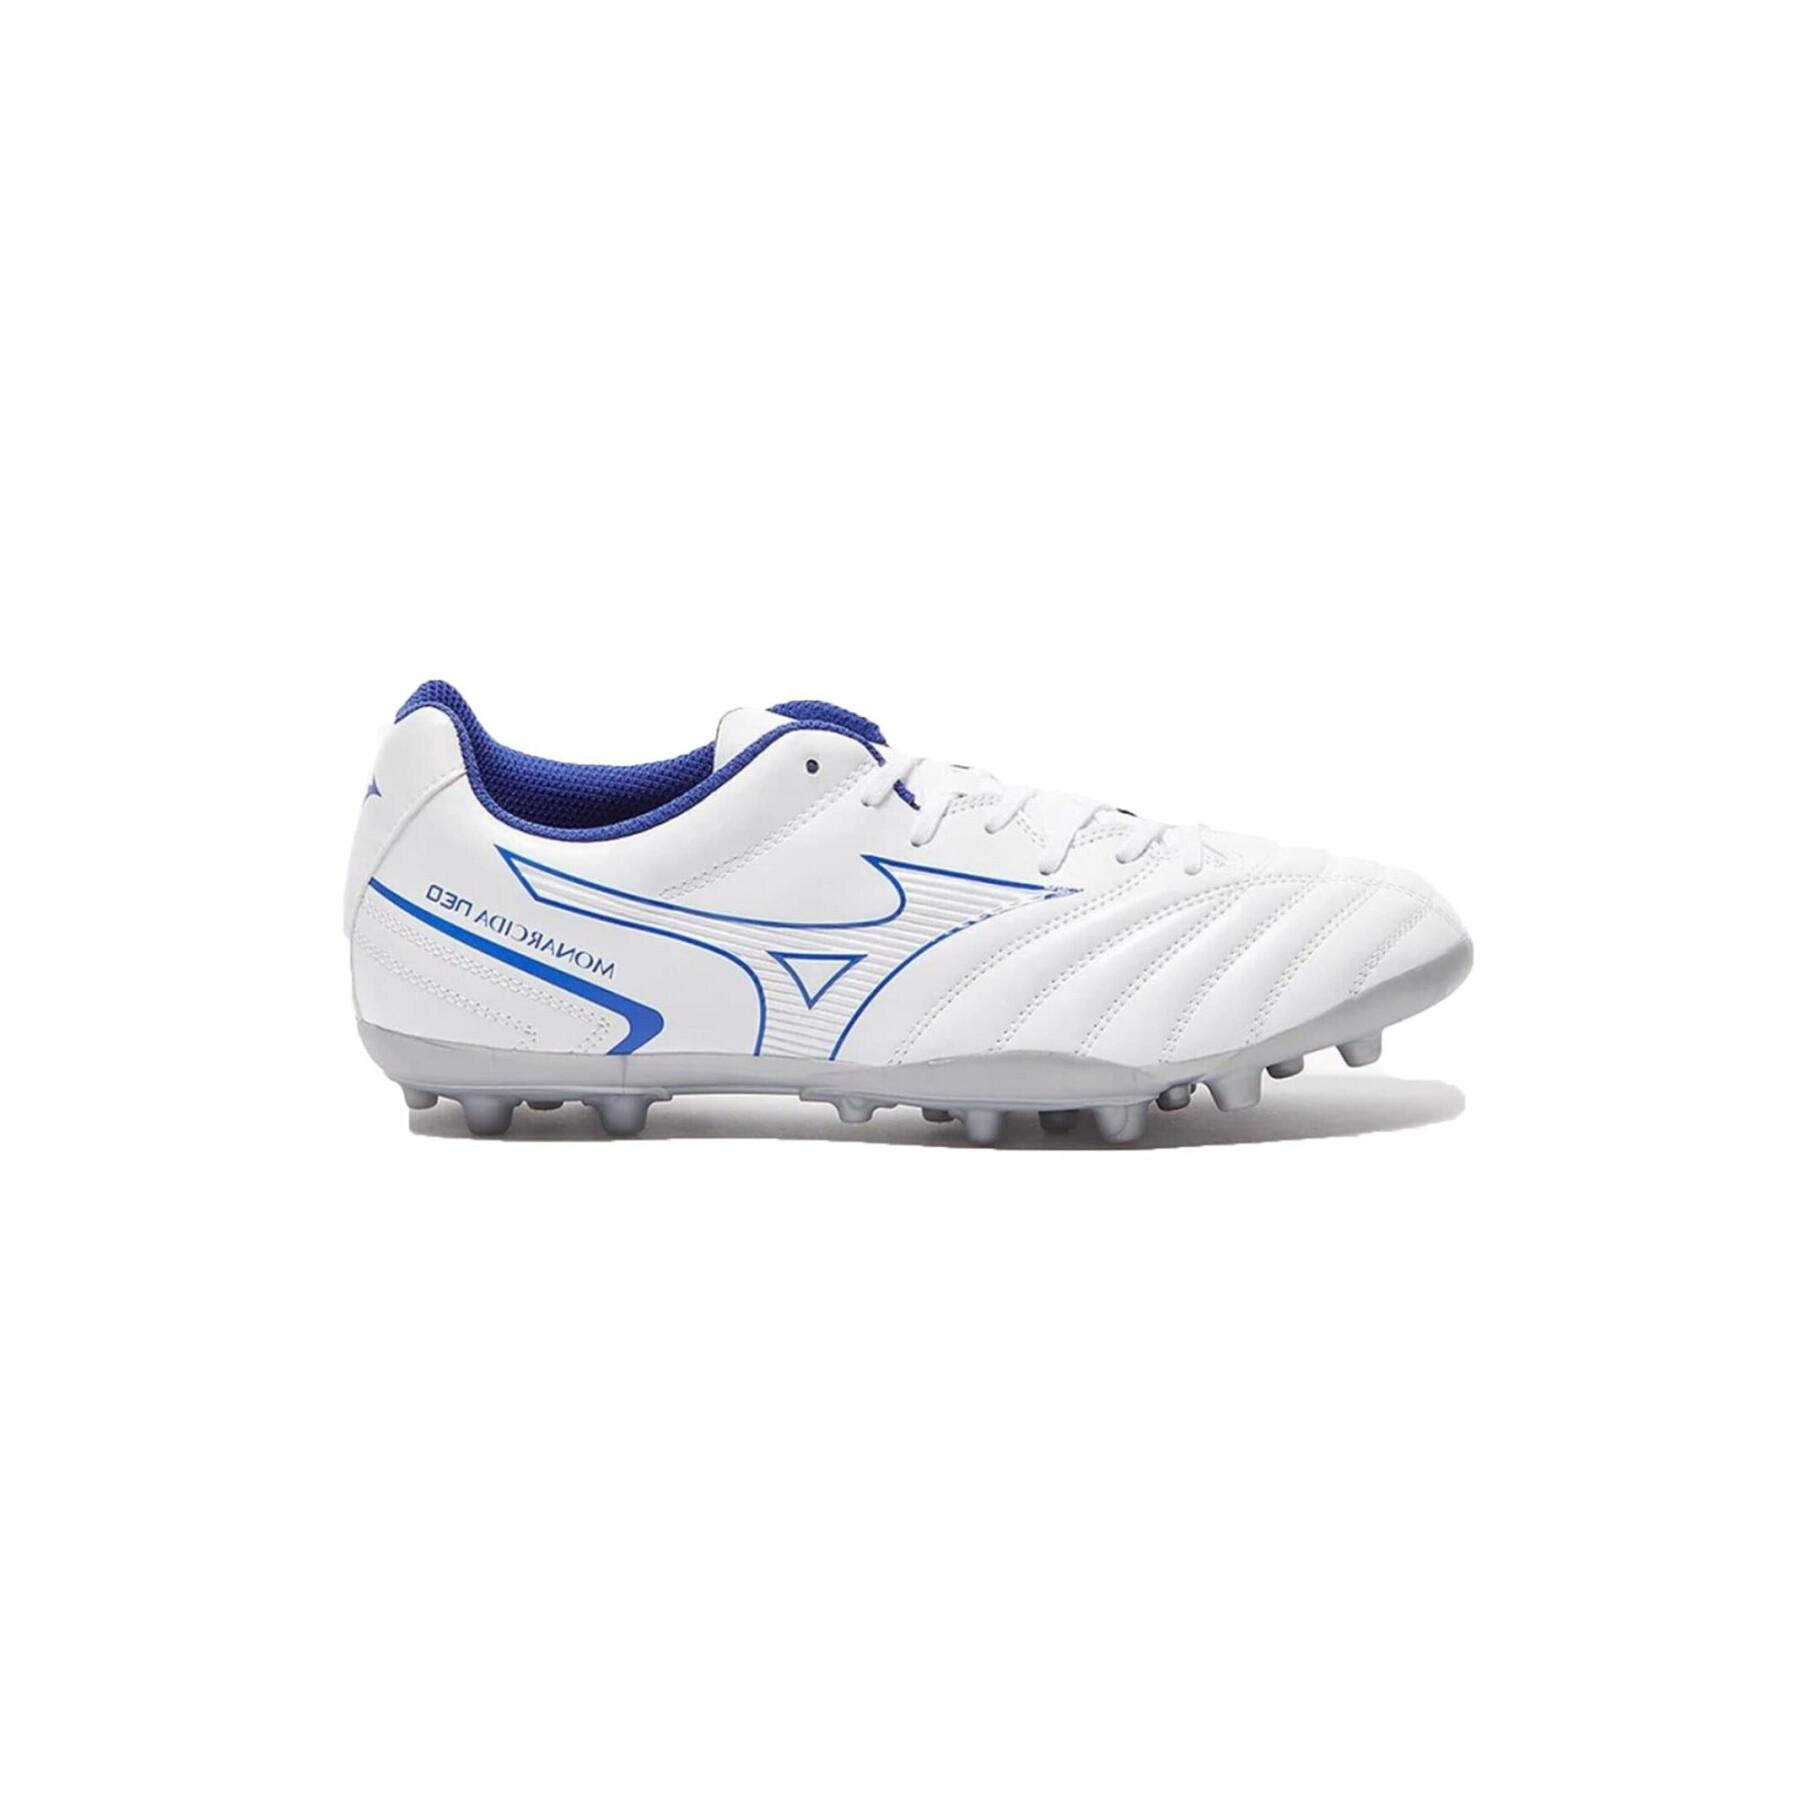 Chaussures de football Mizuno Monarcida Neo Select AG